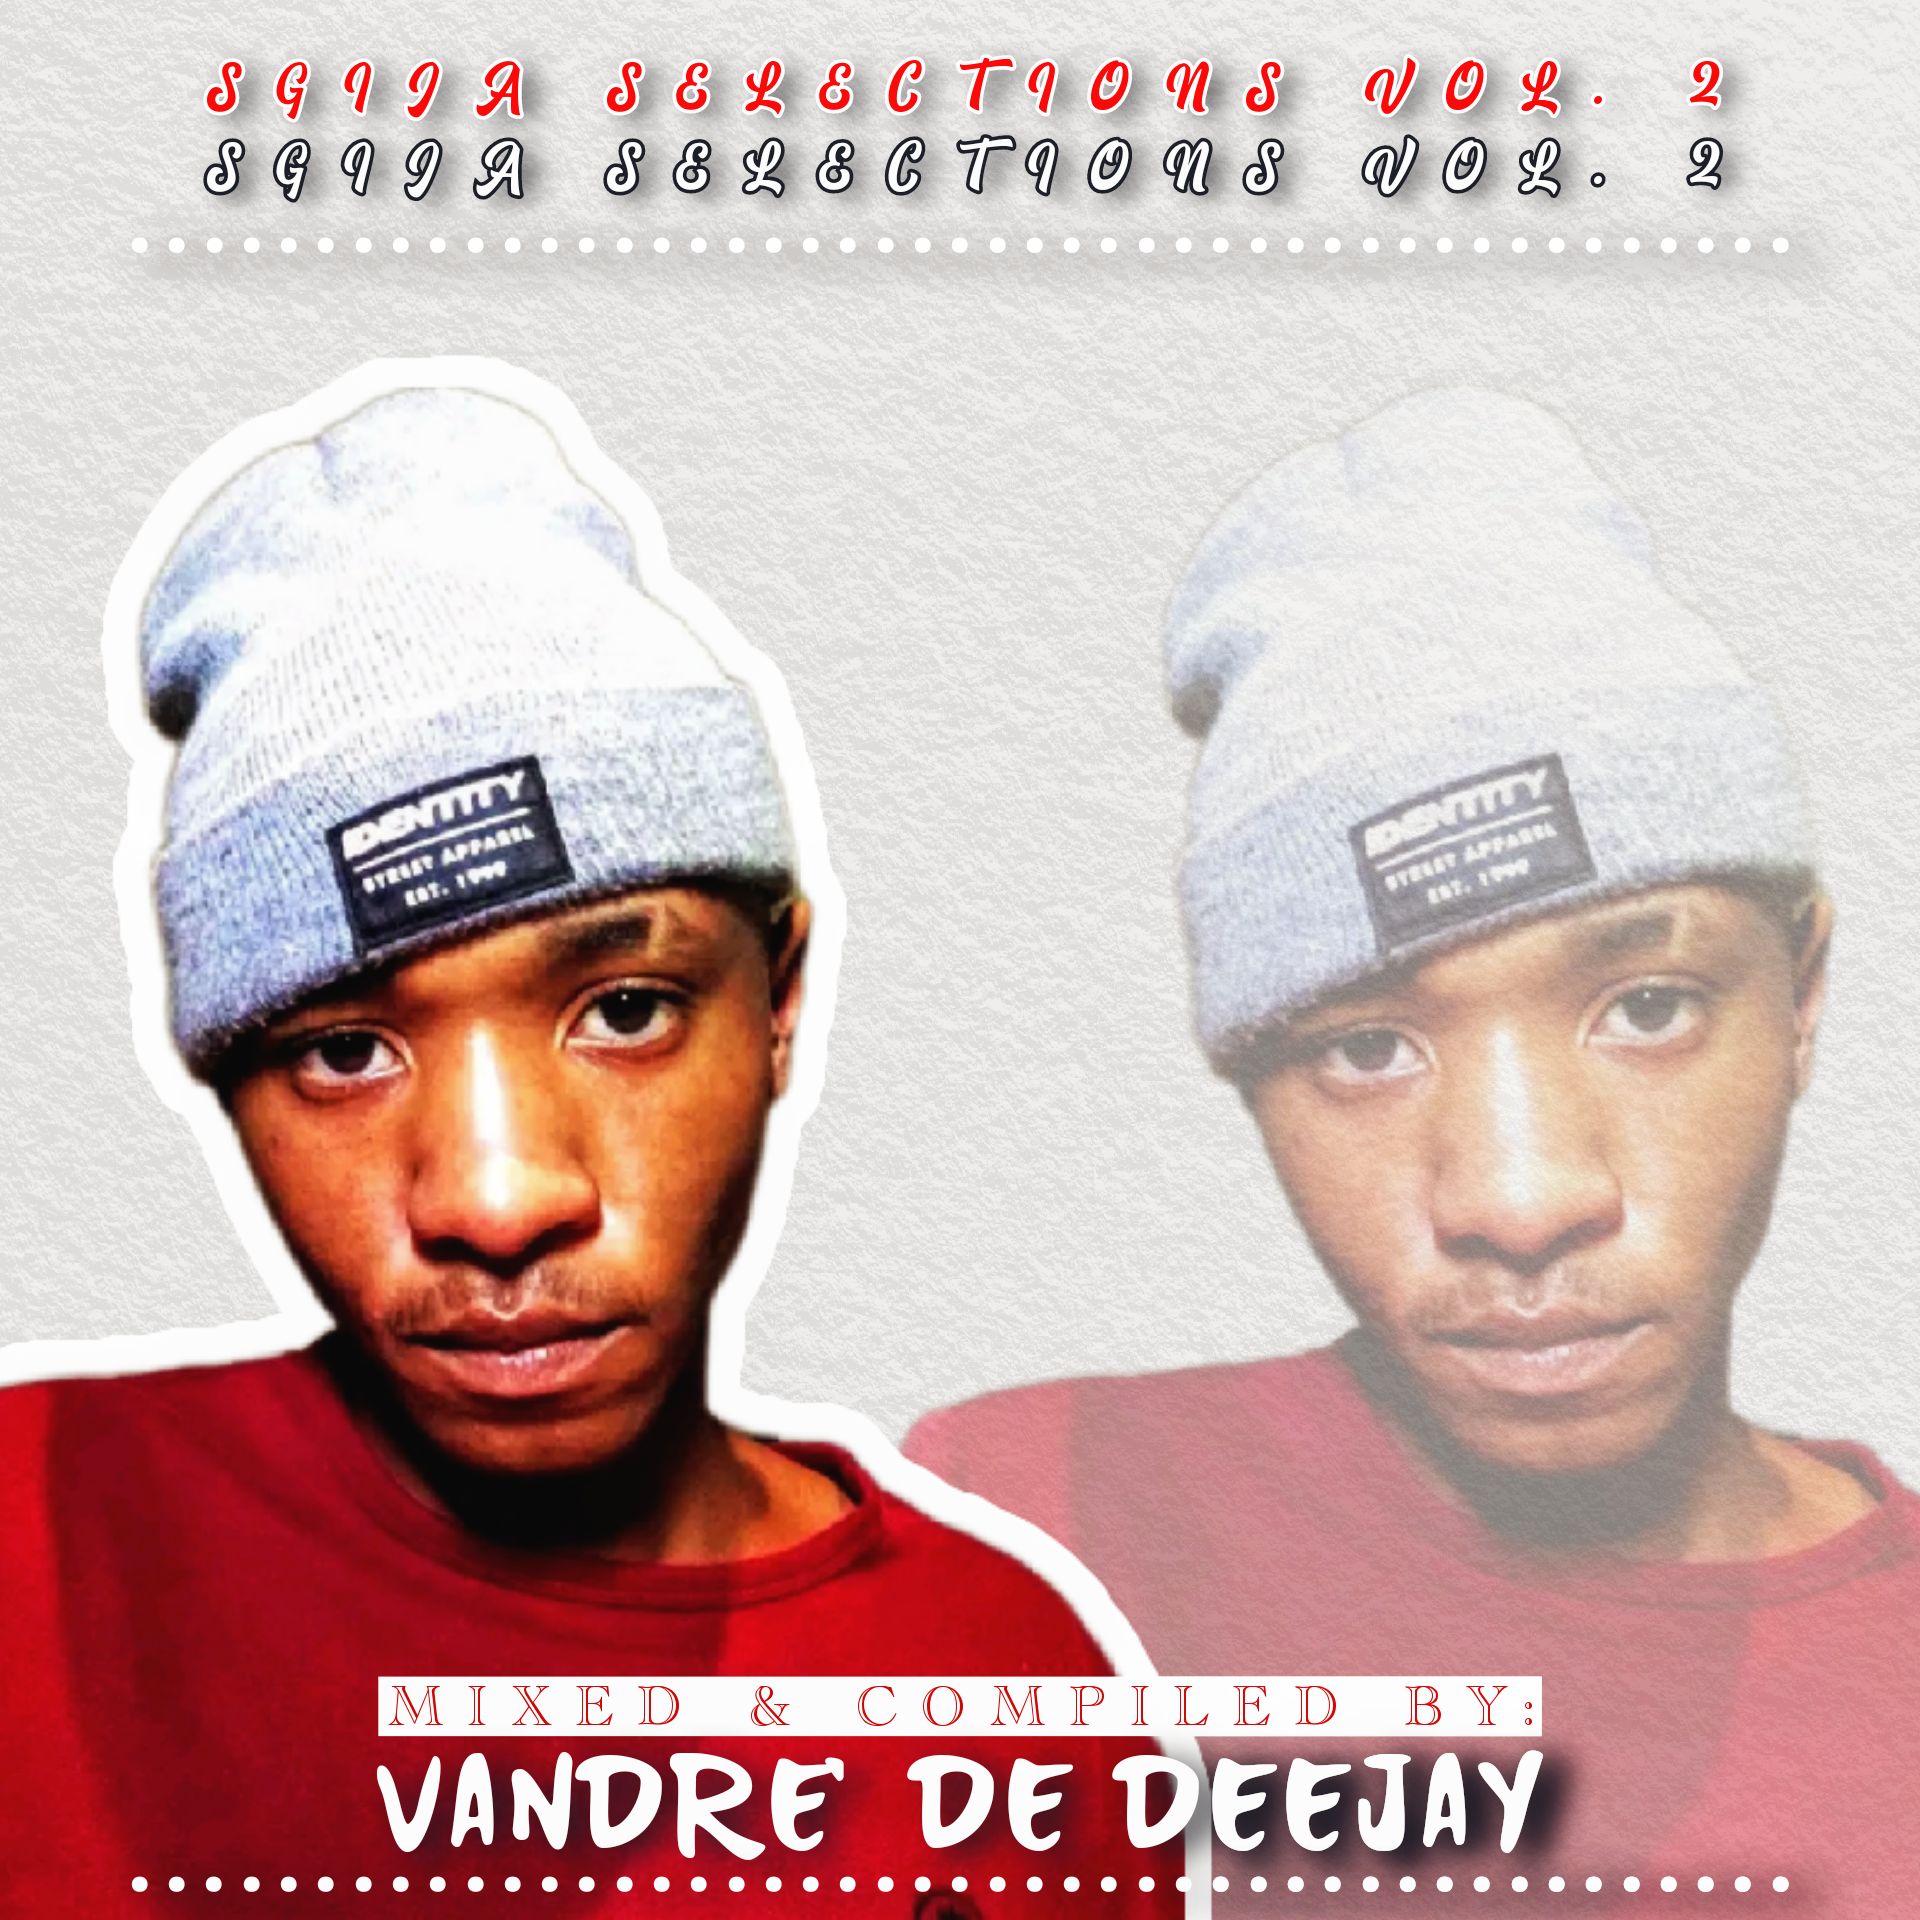 Sgija Selections Vol.2 (100% Production Mixtape) - Vandre' De Deejay